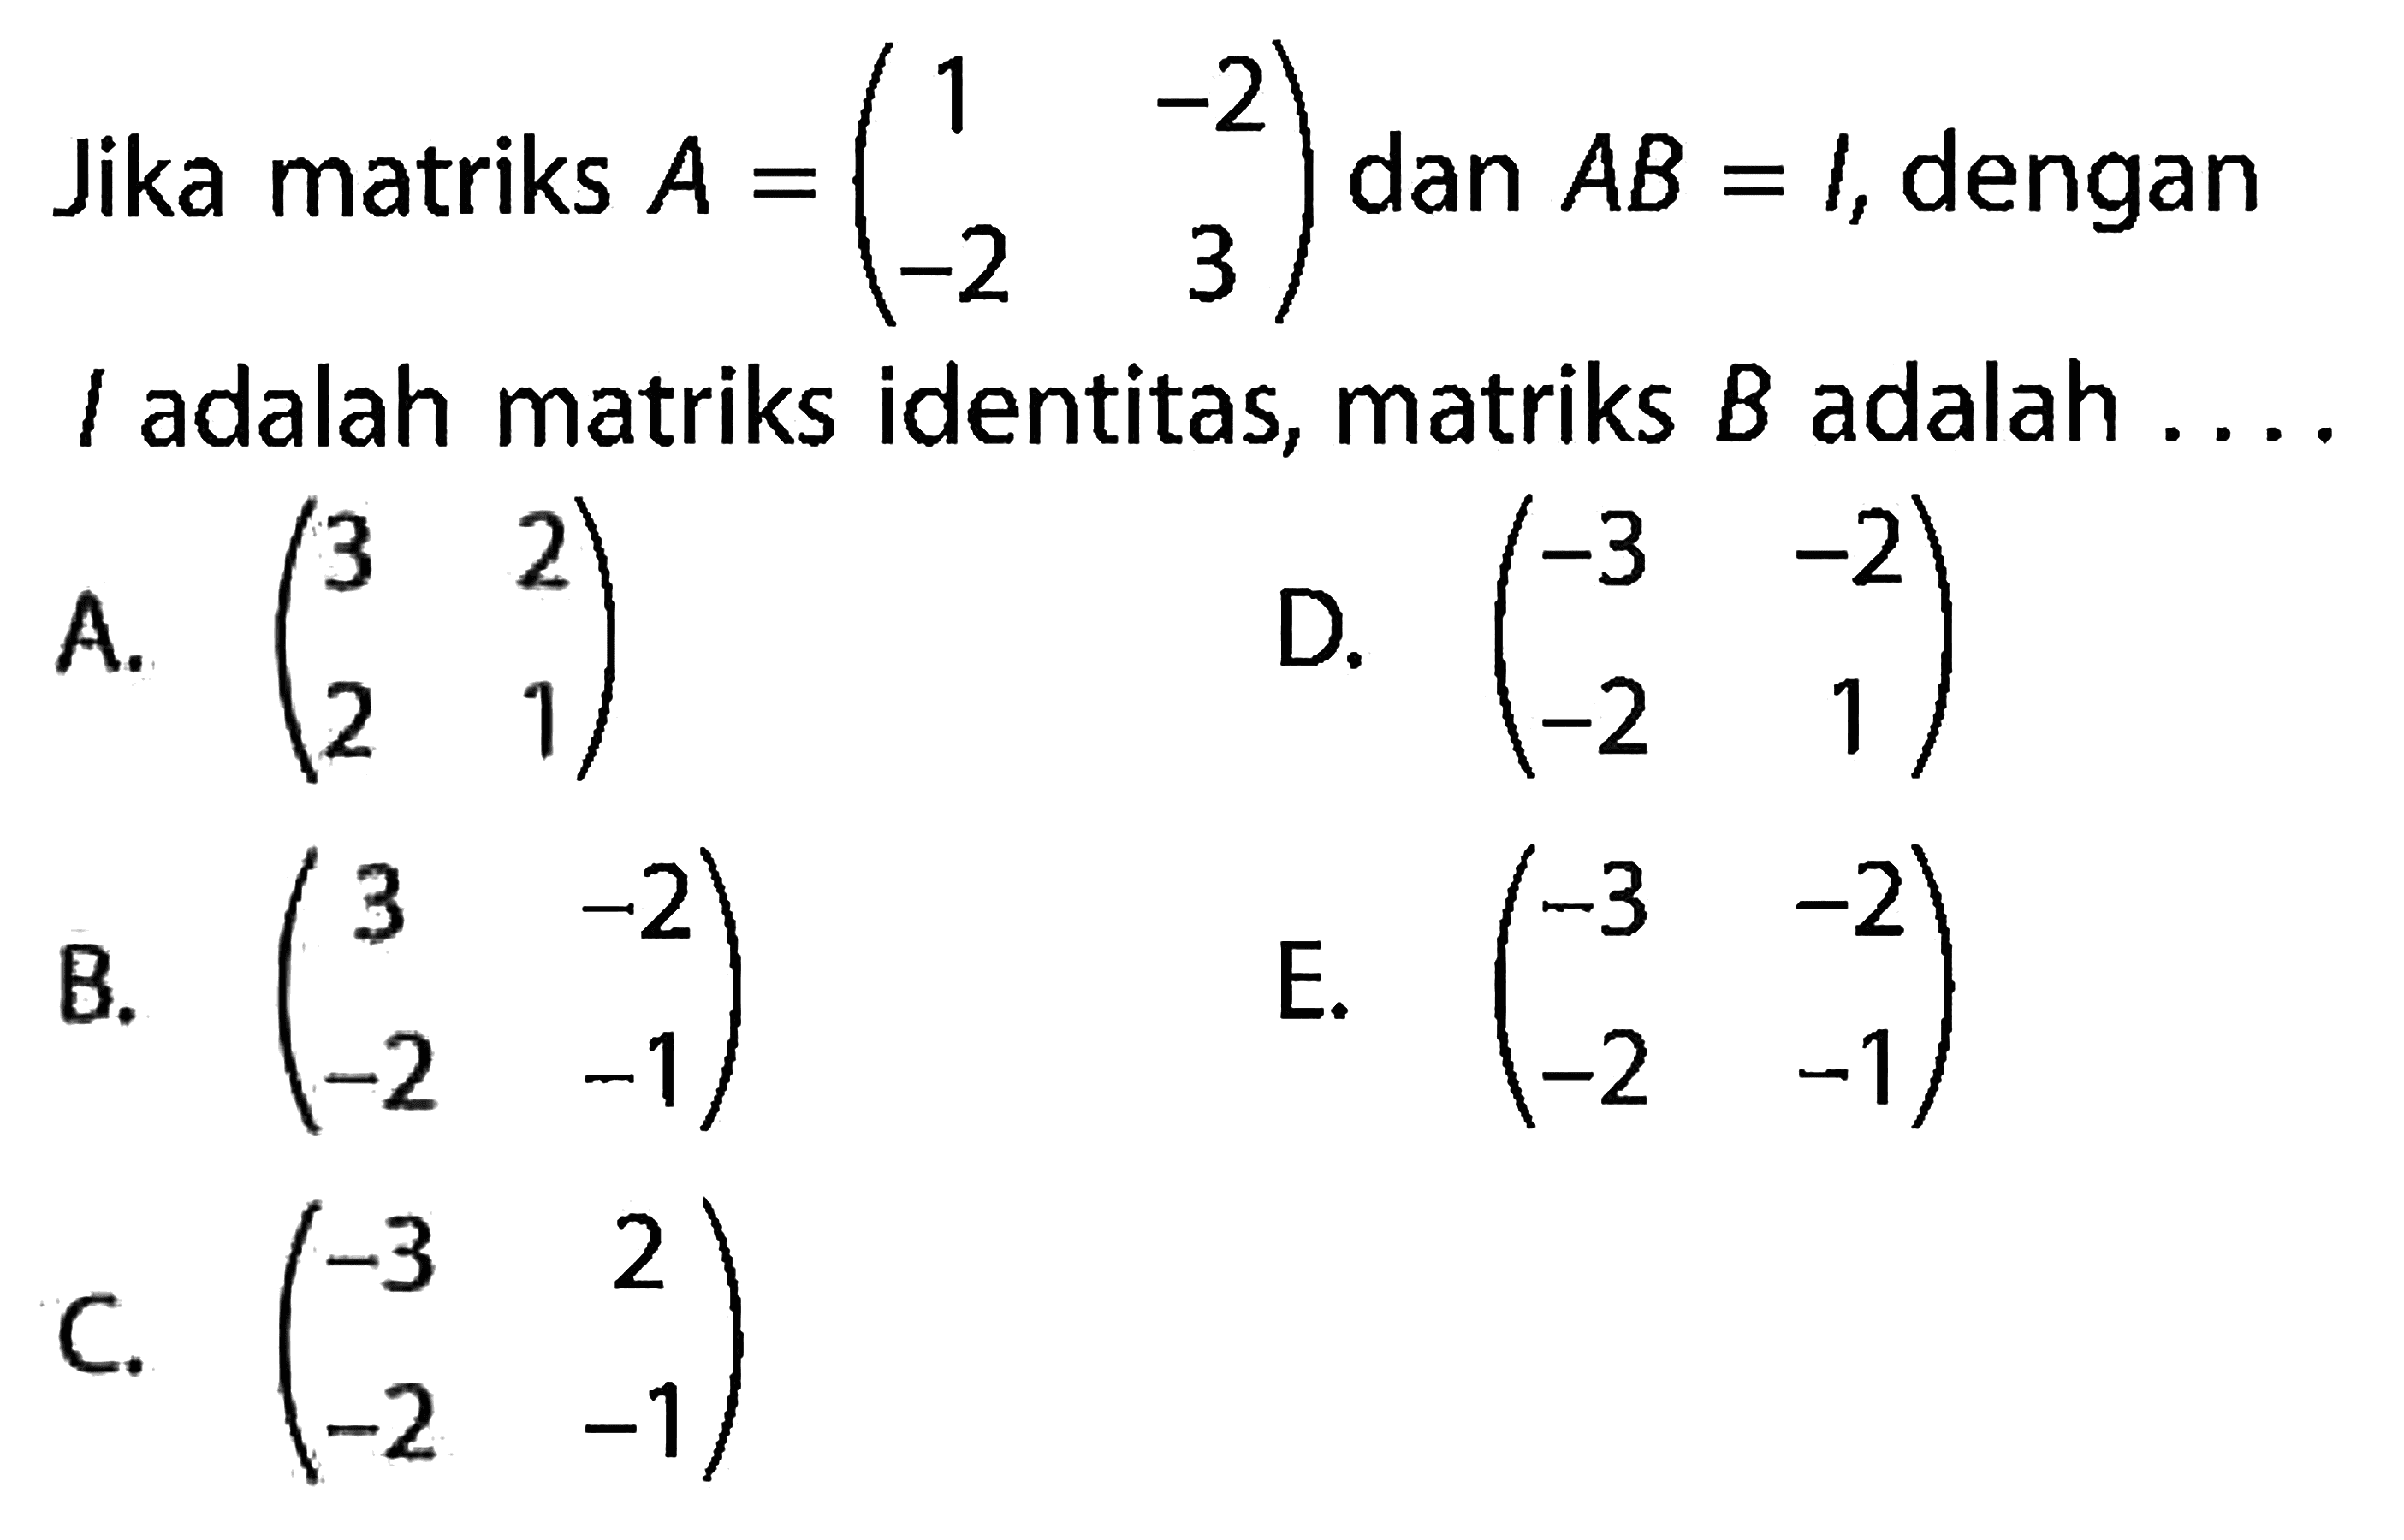 Jika matriks A=(1 -2 -2 3) dan AB=I, dengan I adalah matriks identitas, matriks B adalah ...